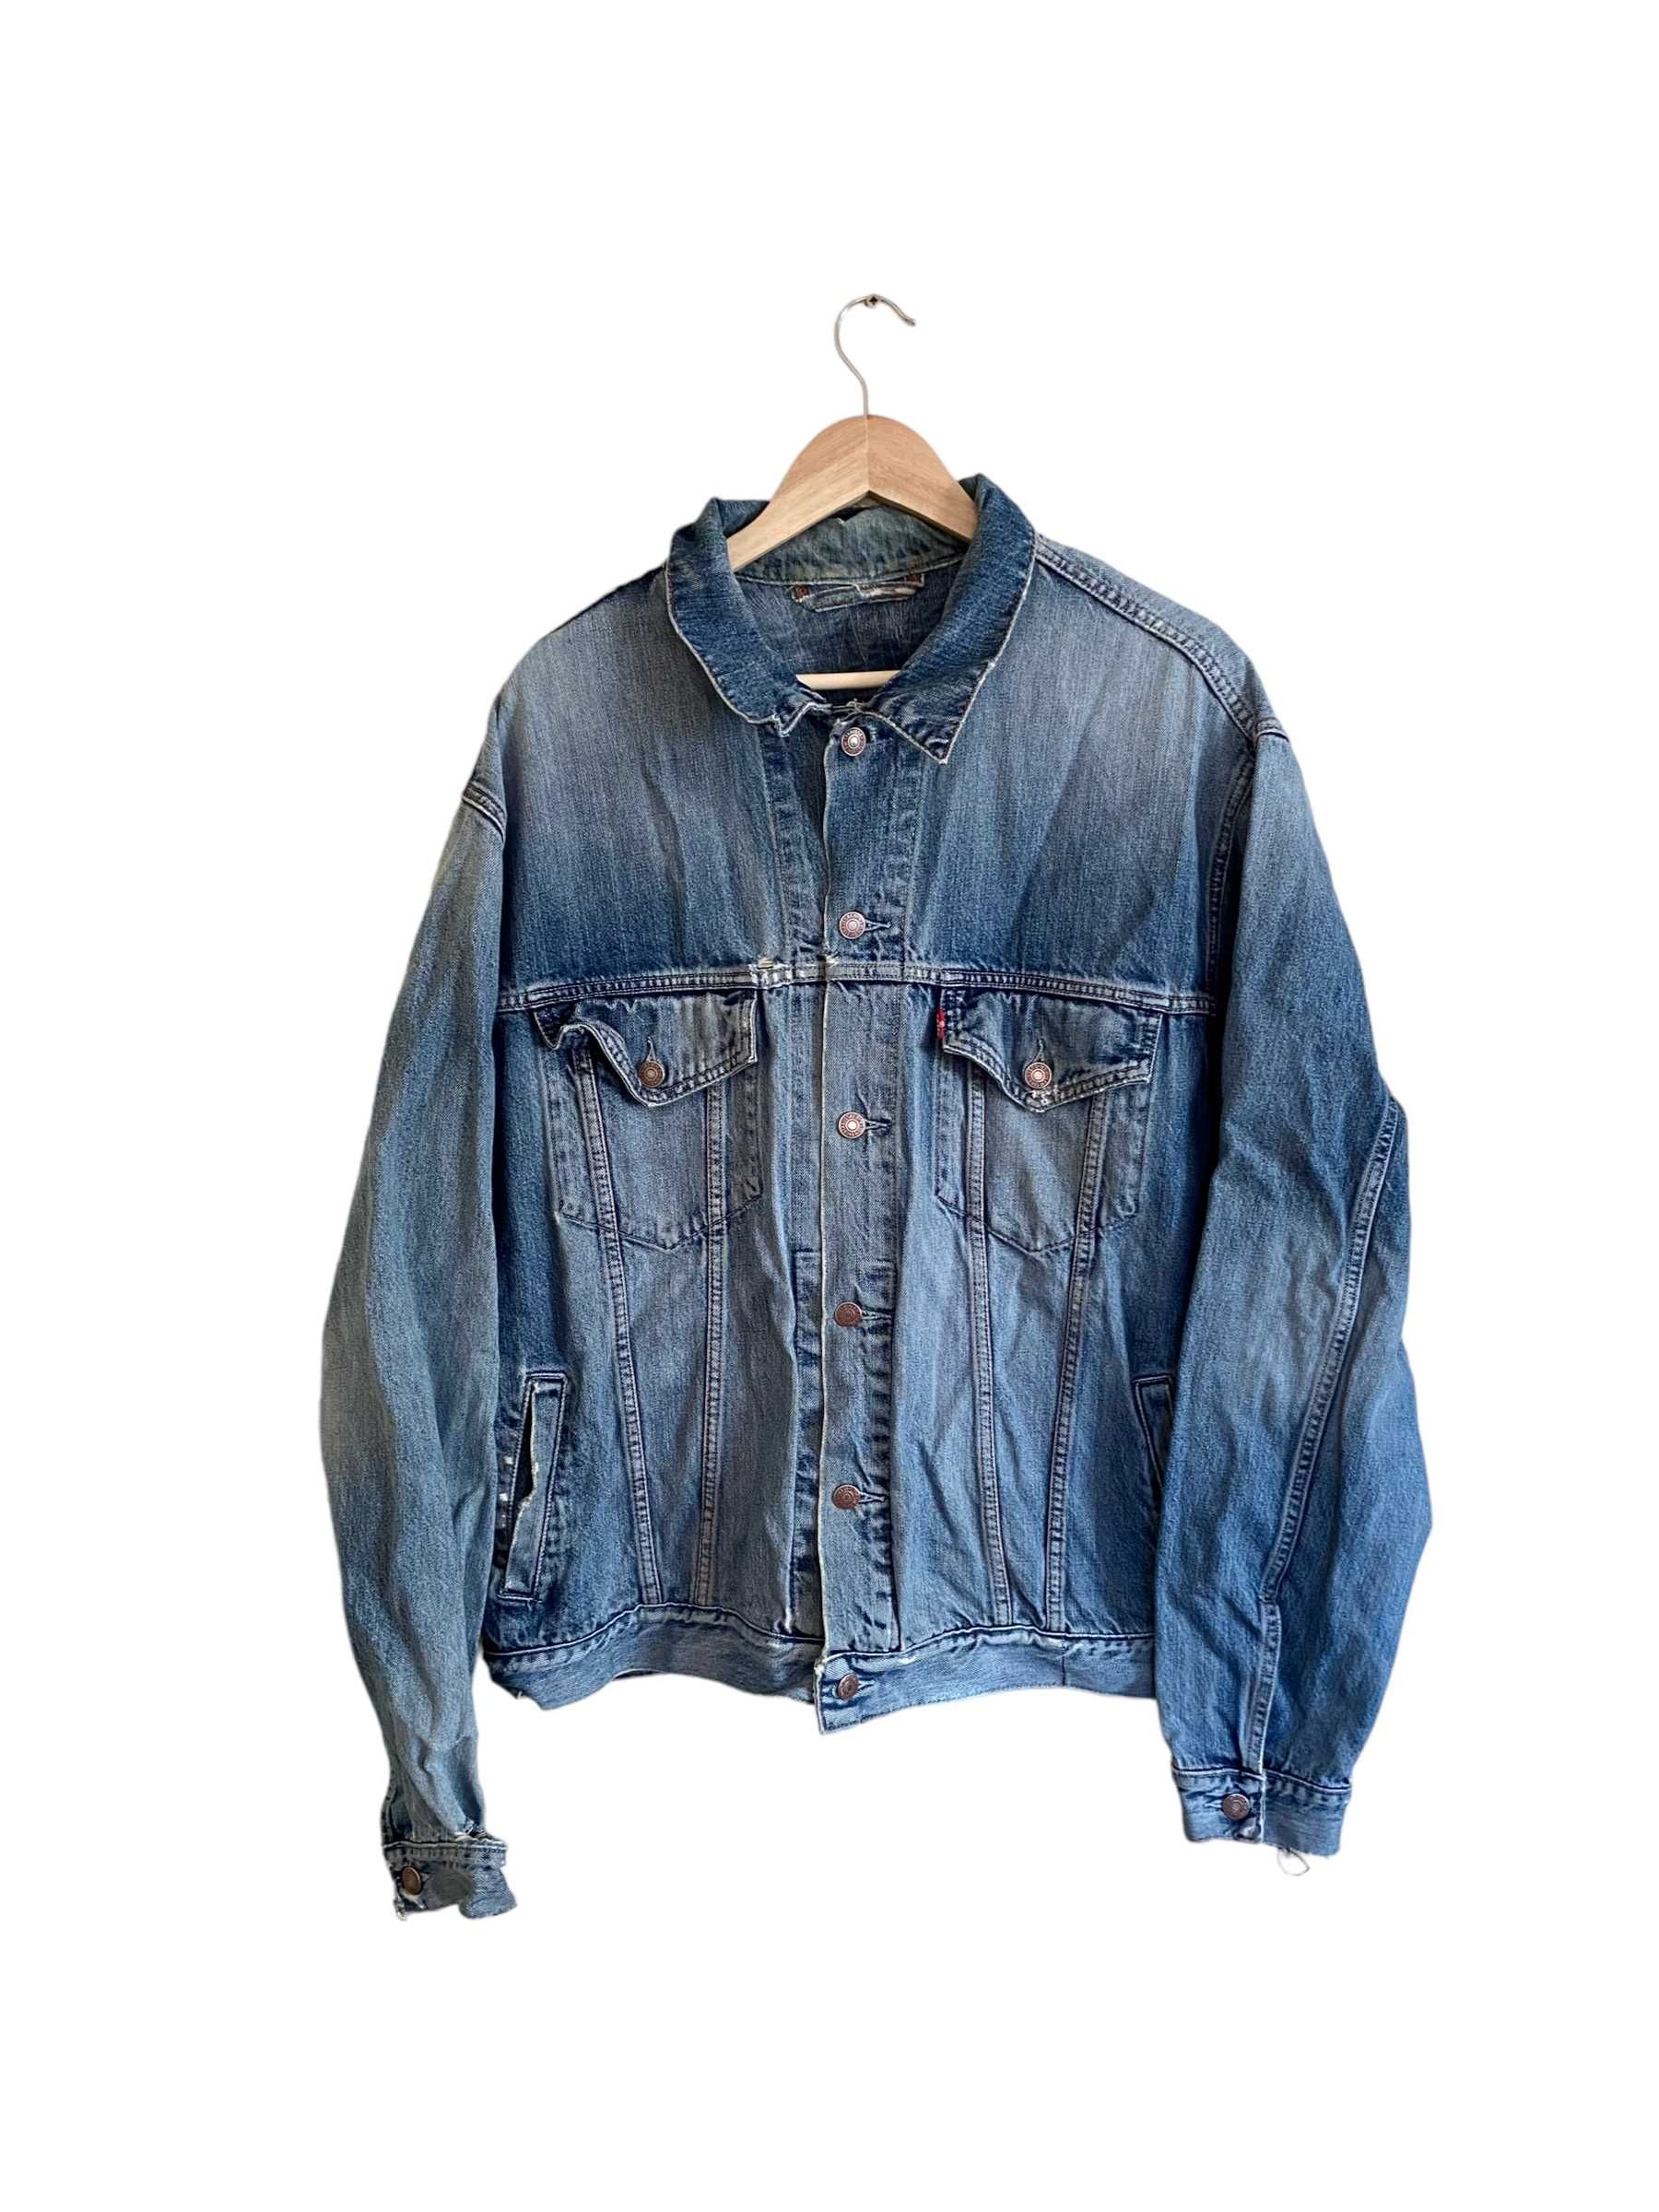 Levi's kurtka jeansowa, trucker jacket, rozmiar XXL, stan bardzo dobry